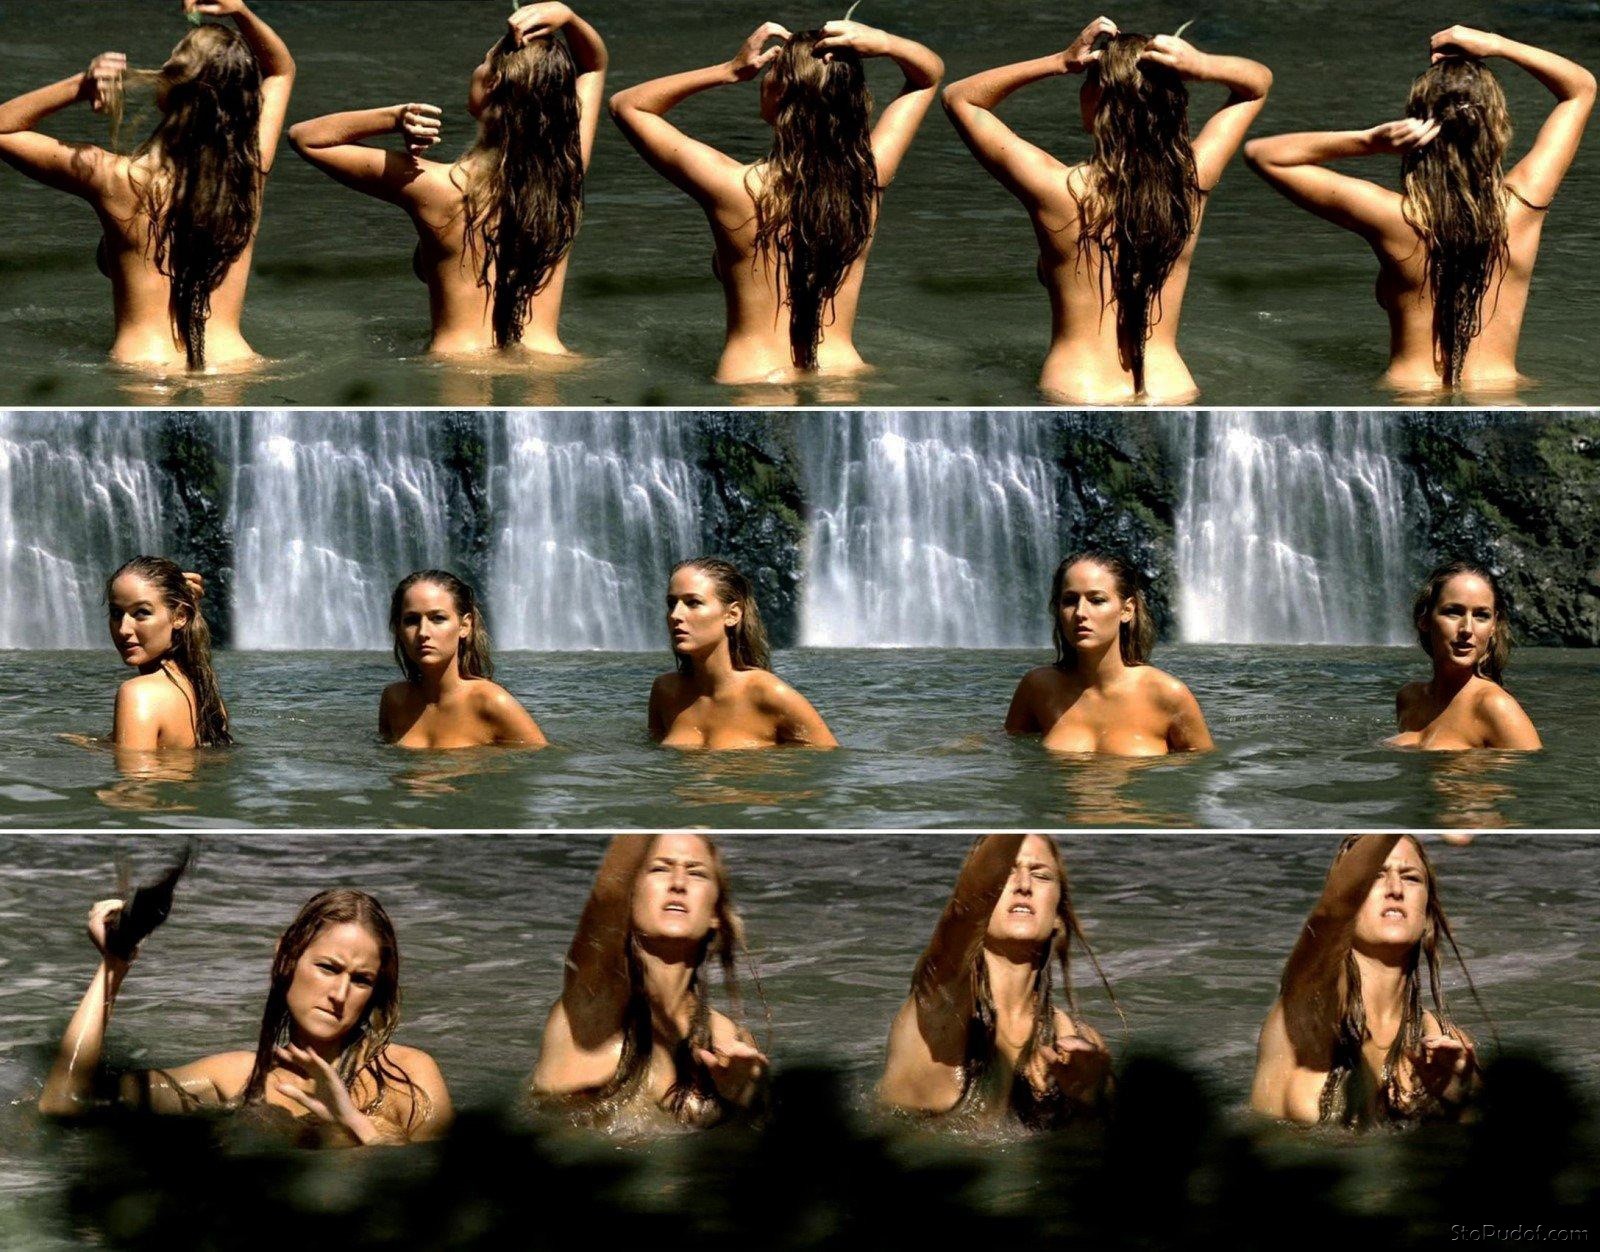 leaked Leelee Sobieski nude pics uncensored - UkPhotoSafari